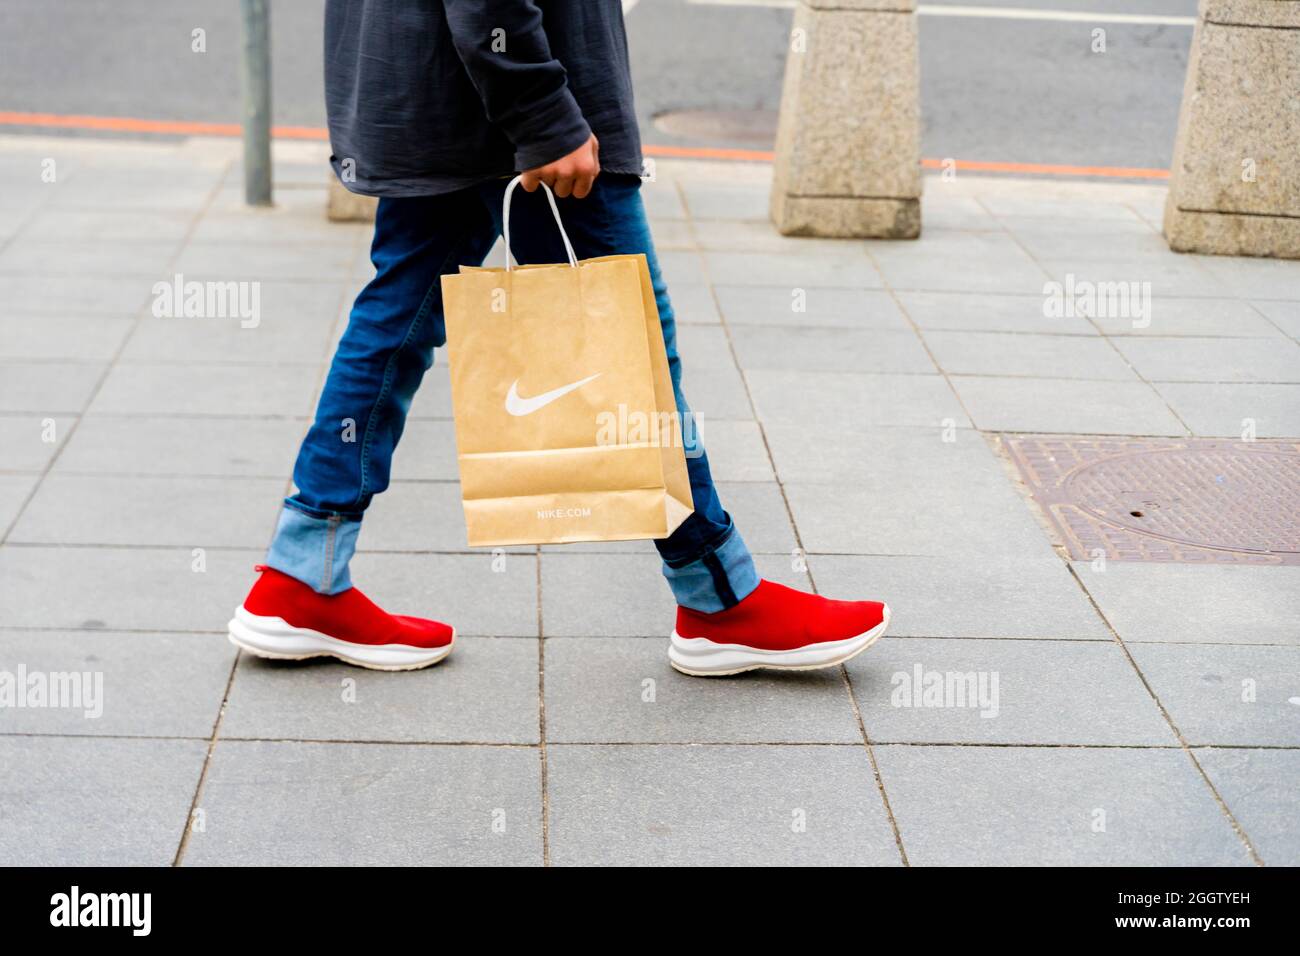 Un homme en jeans et chaussures rouges portant un sac Nike lors de la marche, Moscou, Russie.Concept-consumérisme, économie de consommation, dépenses de consommation. Banque D'Images